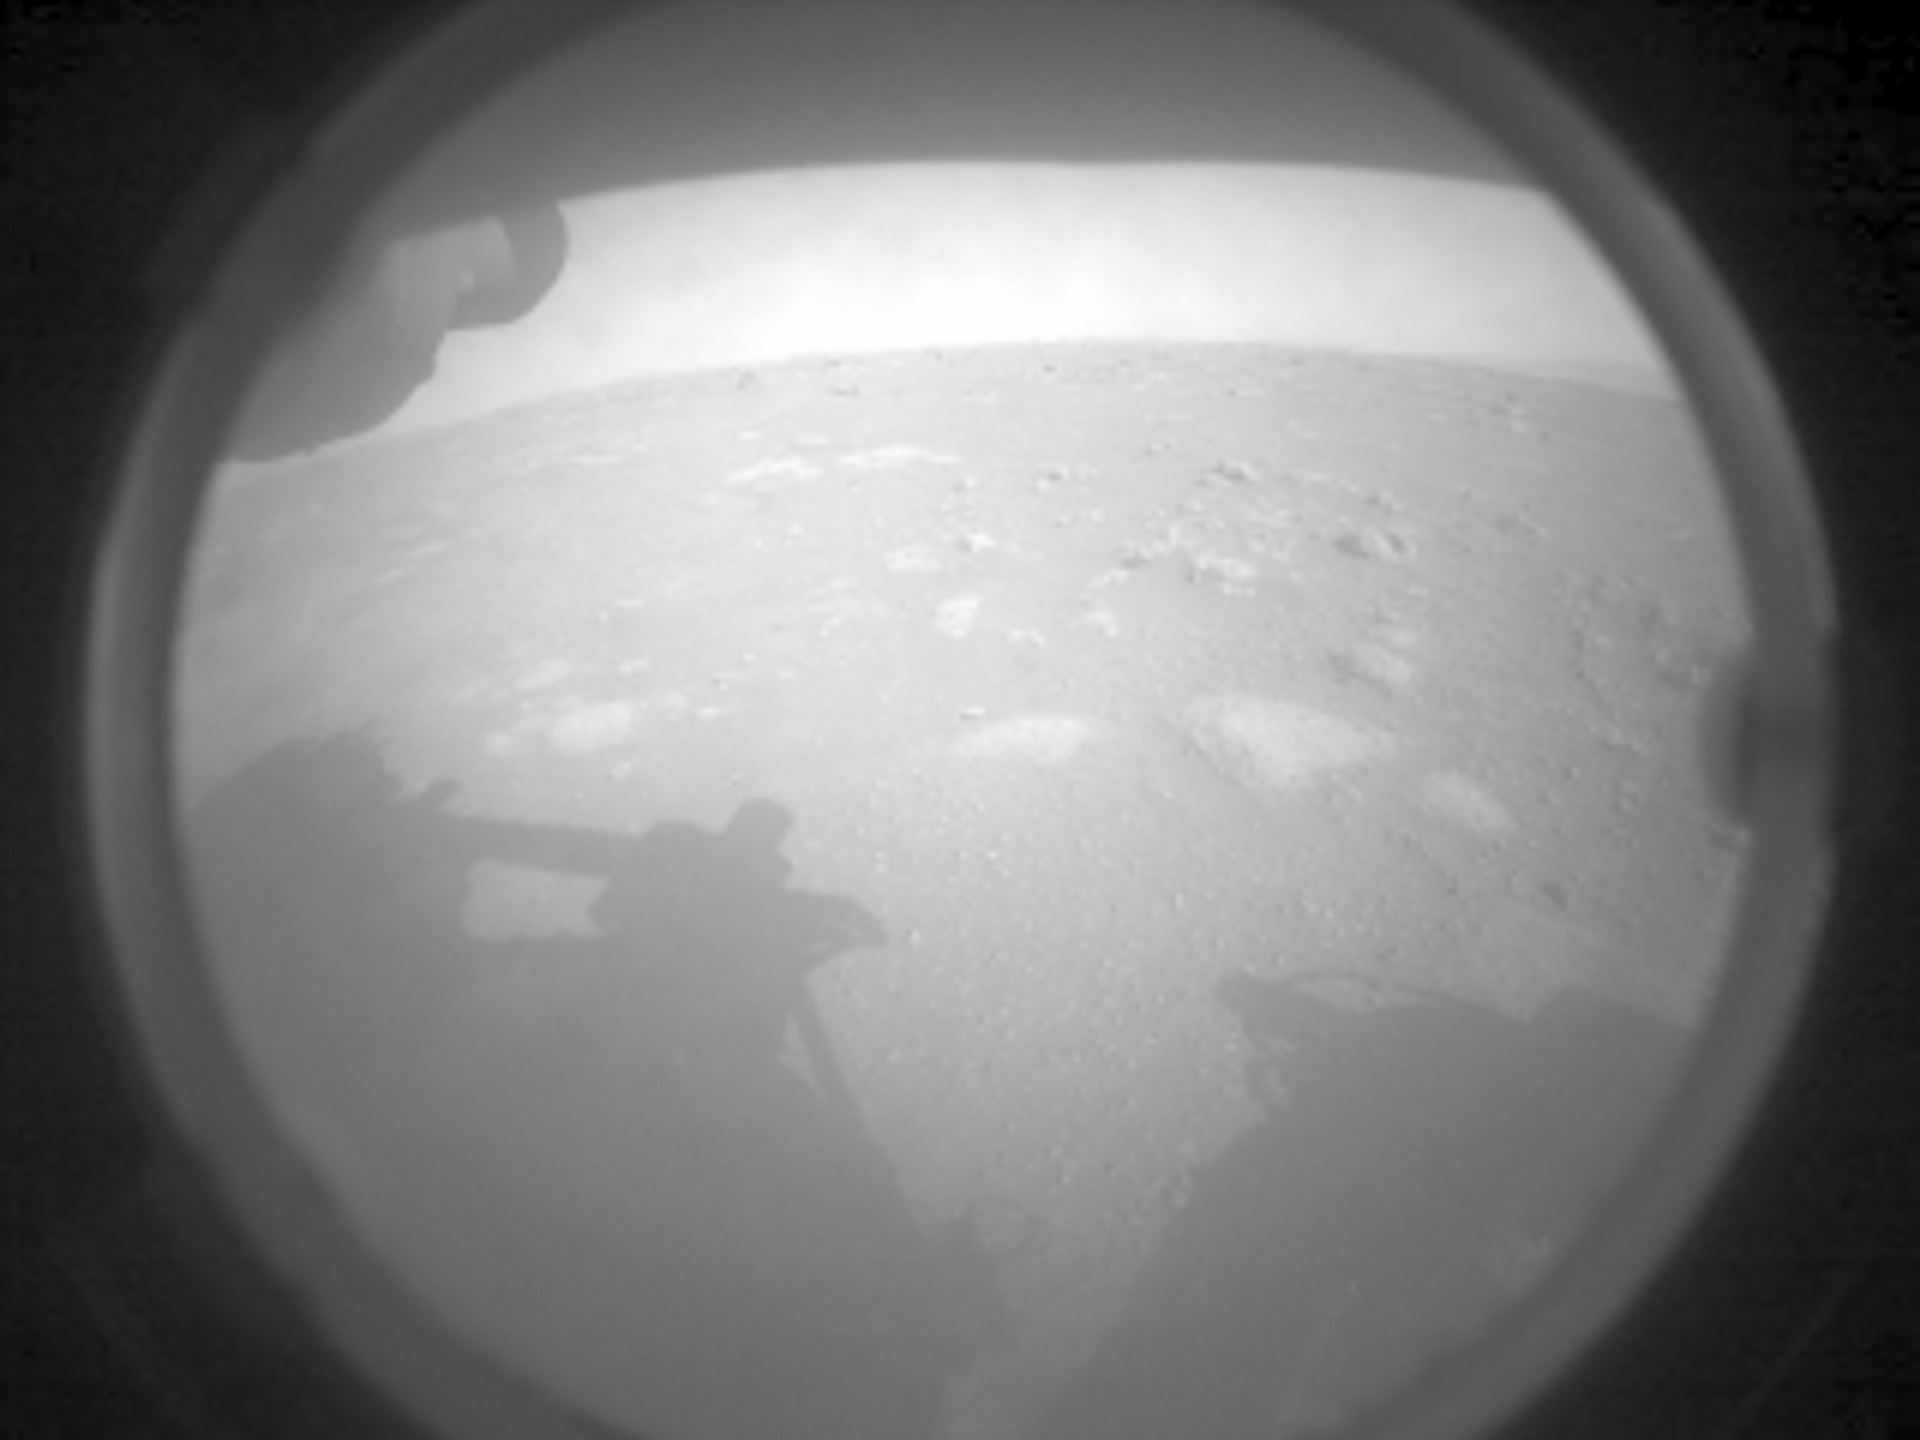 Espectaculares primeras imágenes del rover en Marte